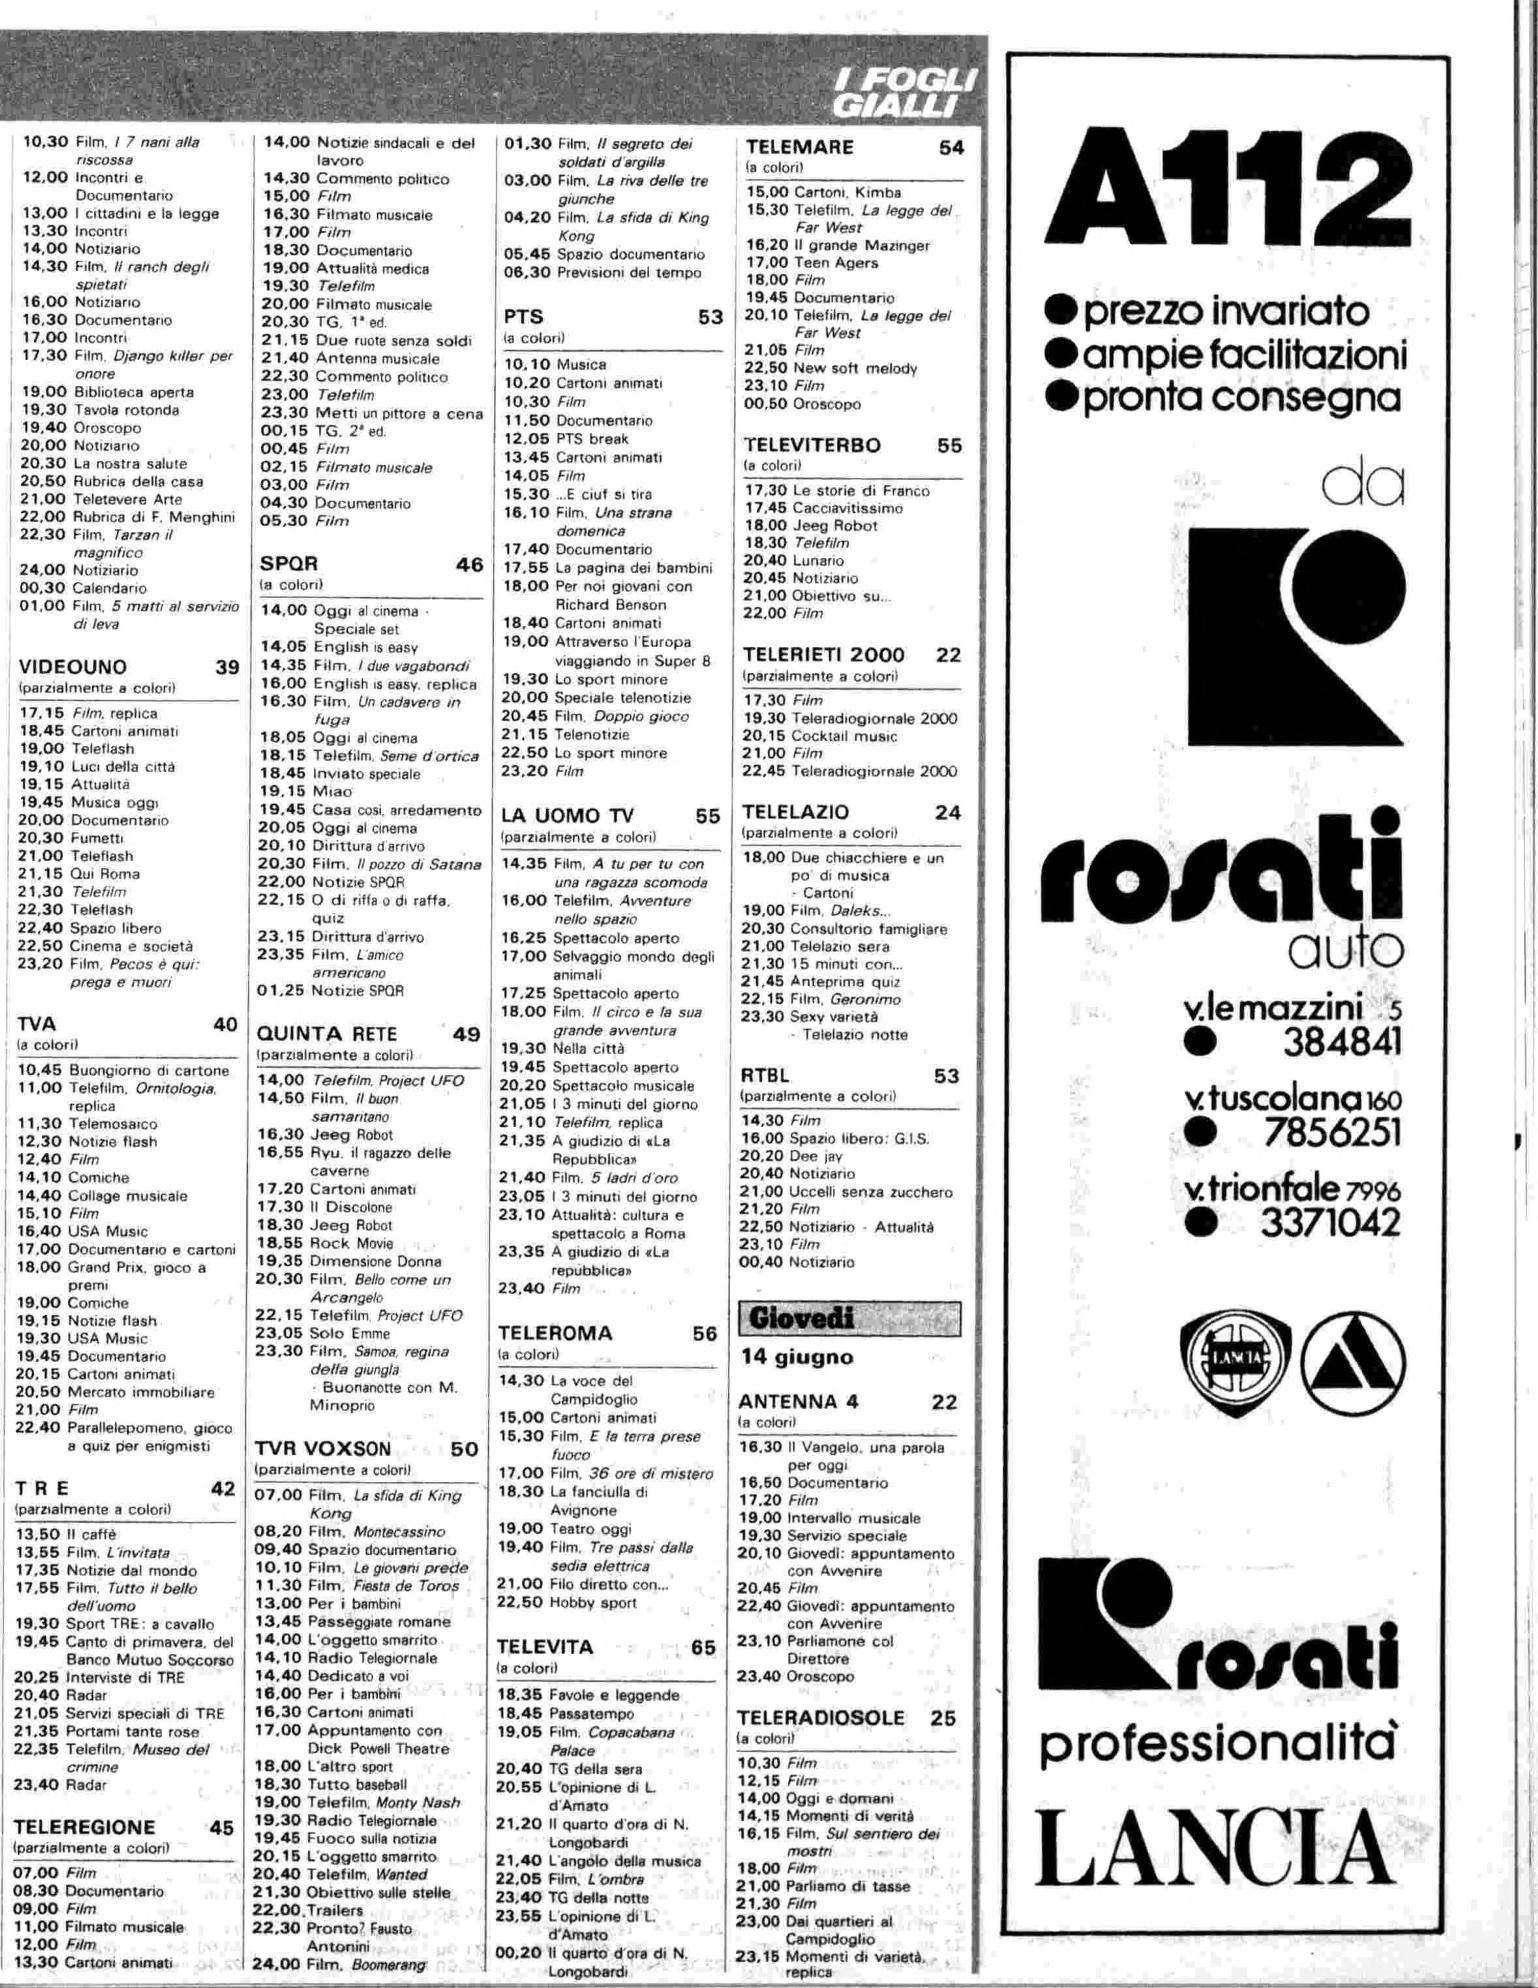 RC-1979-24_0078.jp2&id=Radiocorriere-197